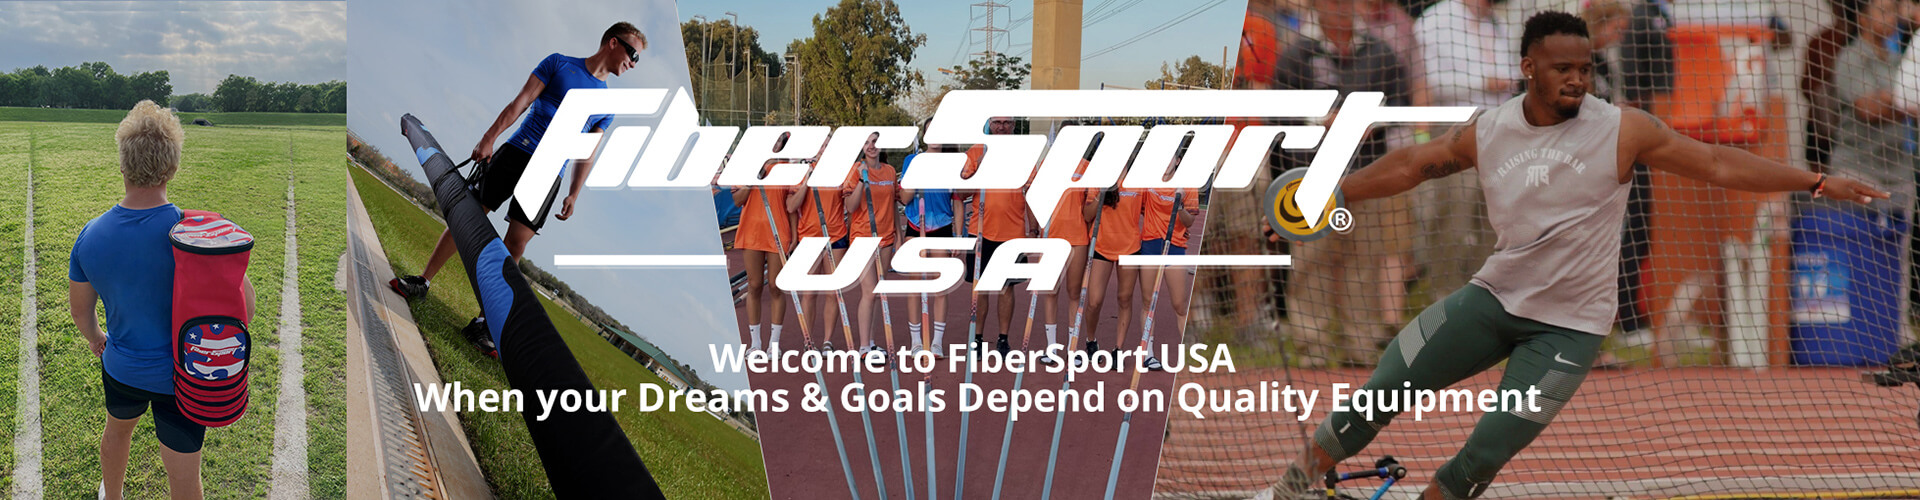 FiberSport USA